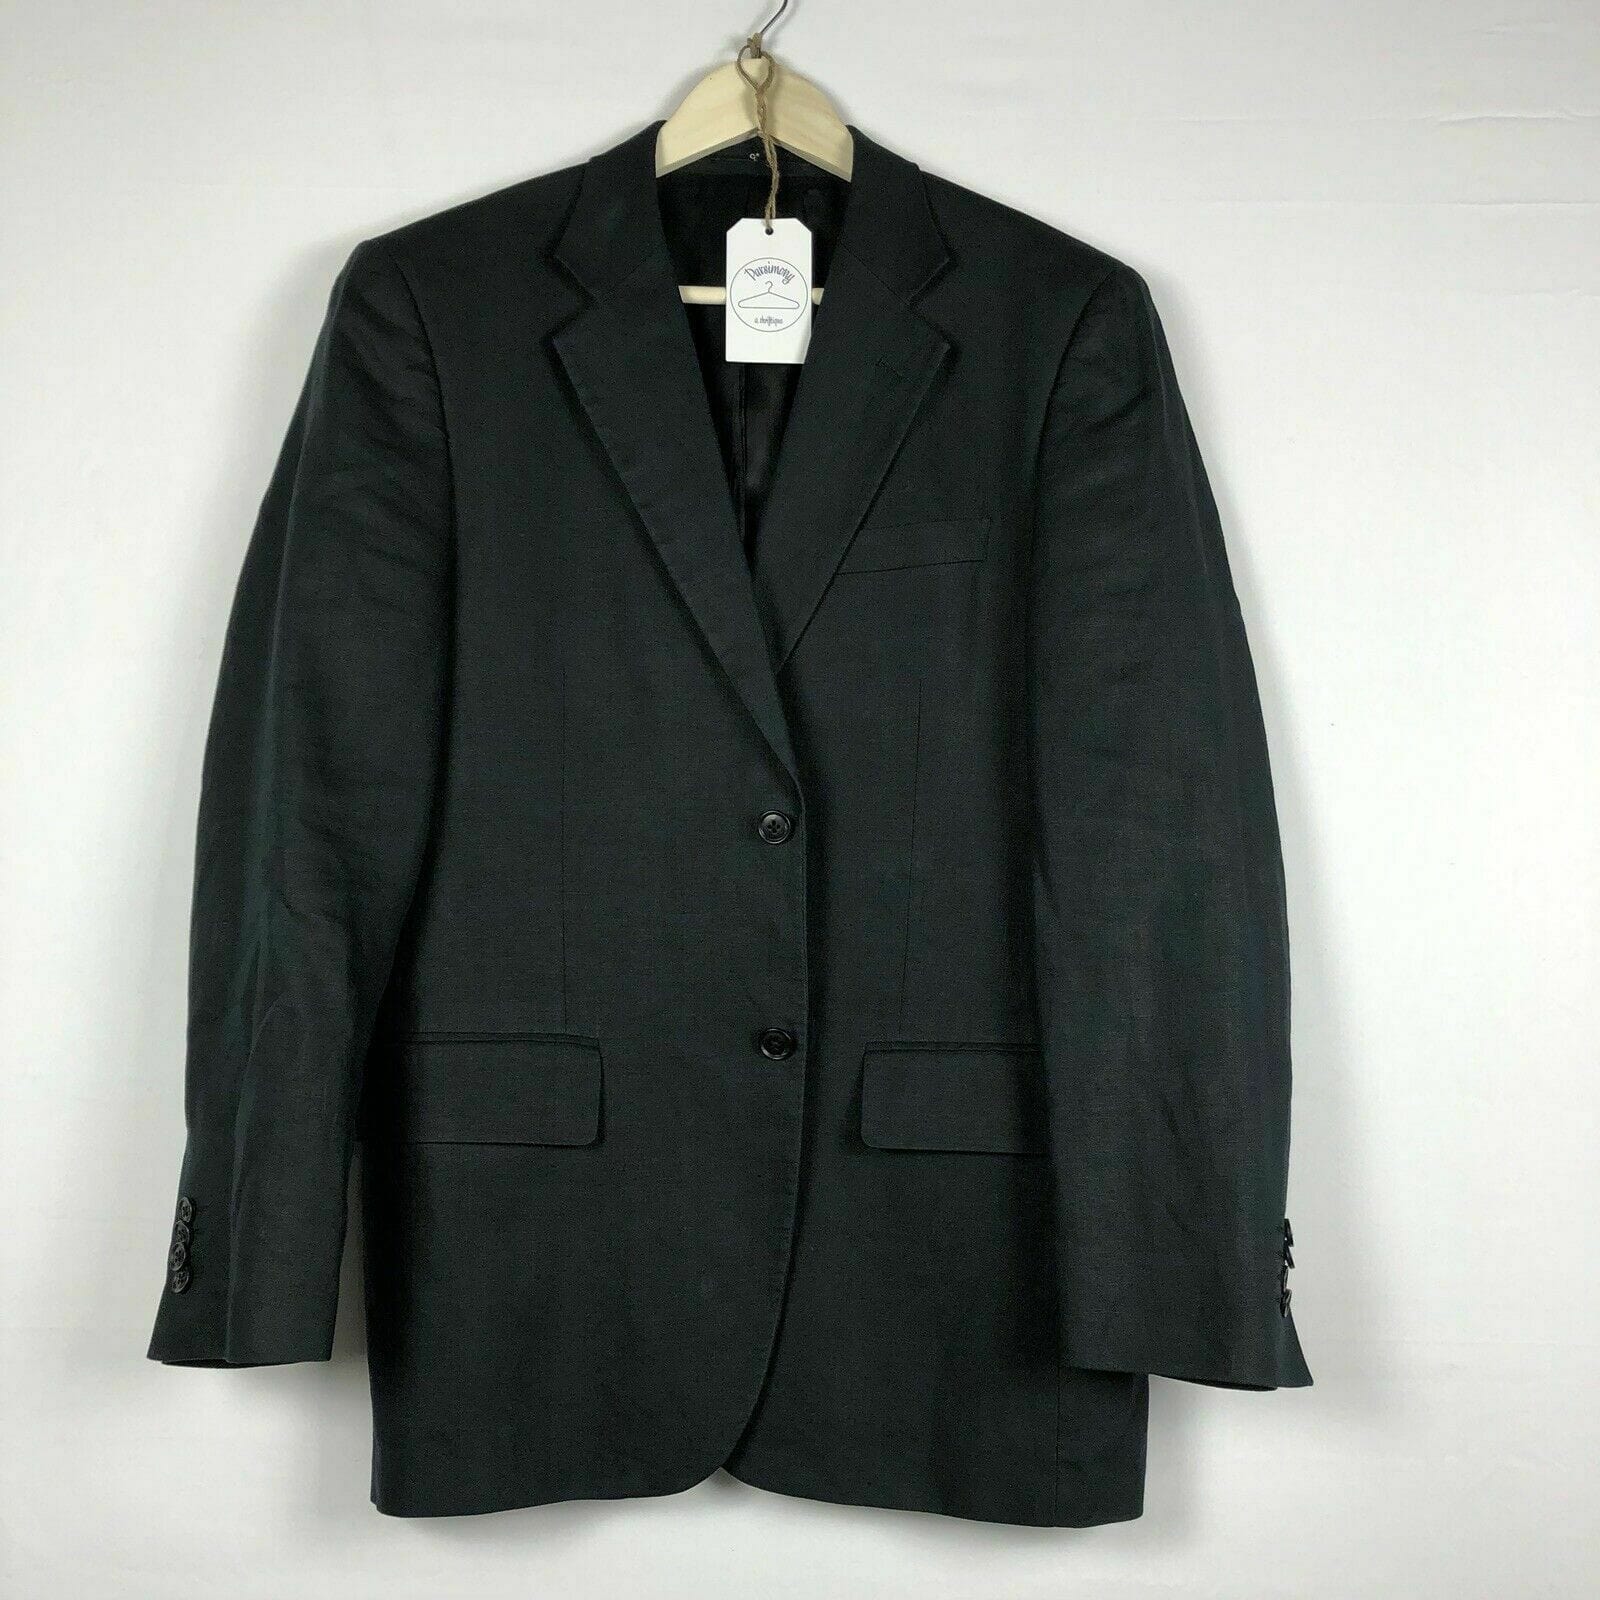 Buy CELIO Men's Grey Jacket Online